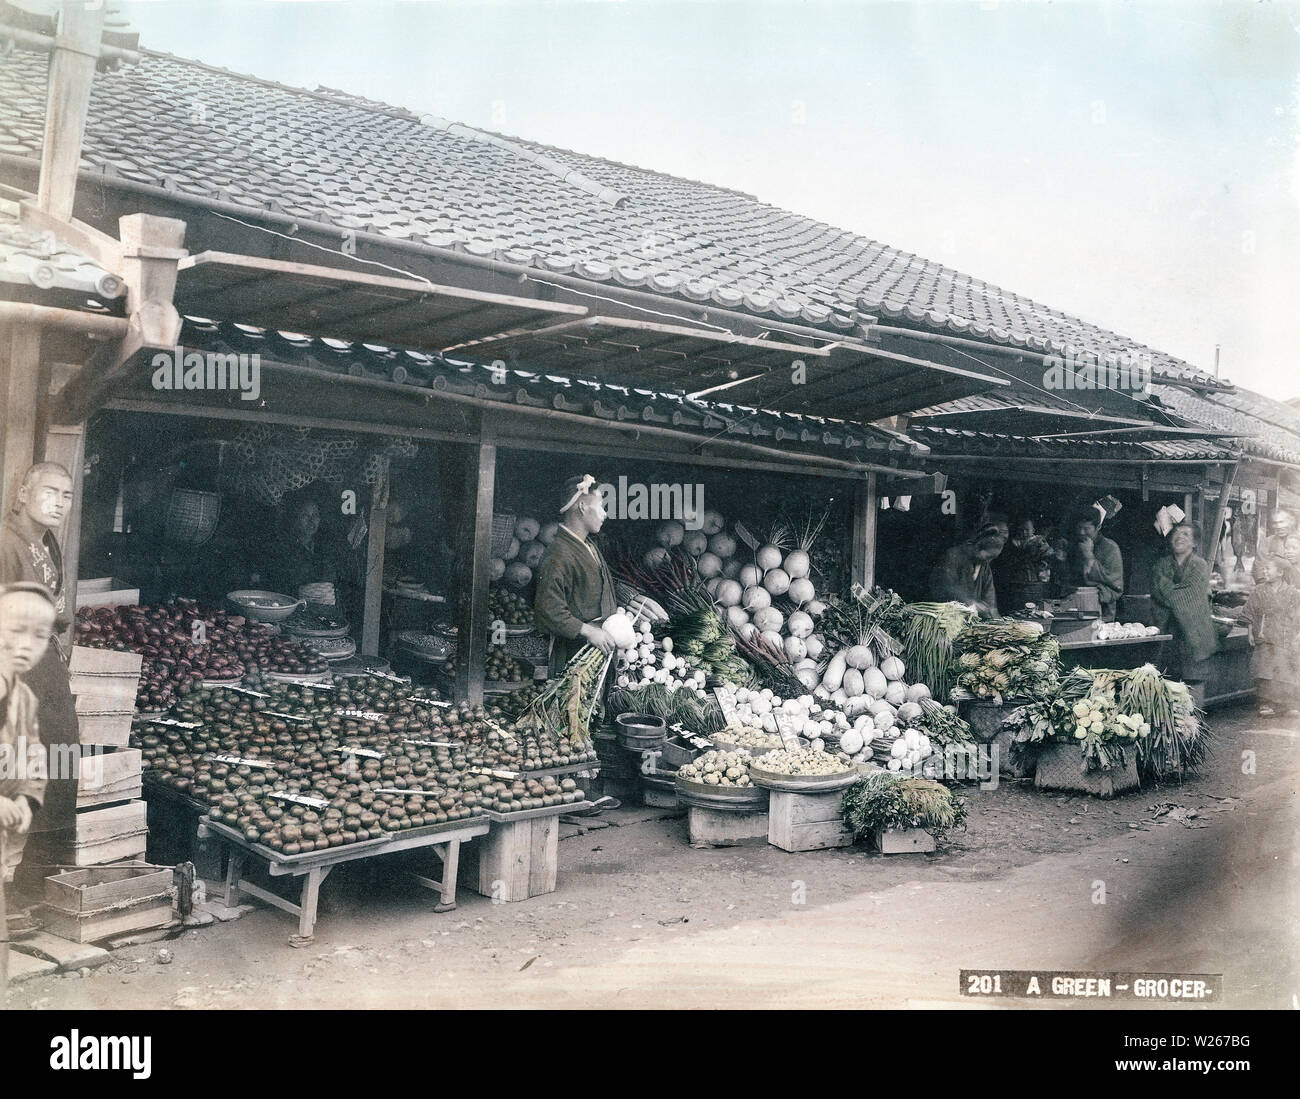 [1880s Japan - Japanische Gemüse Store] - Der Inhaber einer pflanzlichen Store ist ein sehr großer Kabu (Rübe). Klette, Rettich, Senf und Zwiebeln können vor ihm gesehen werden. Panels an der Traufe geschickt werden die Produkte aus dem Sonnenlicht zu schützen. 19 Vintage albumen Foto. Stockfoto